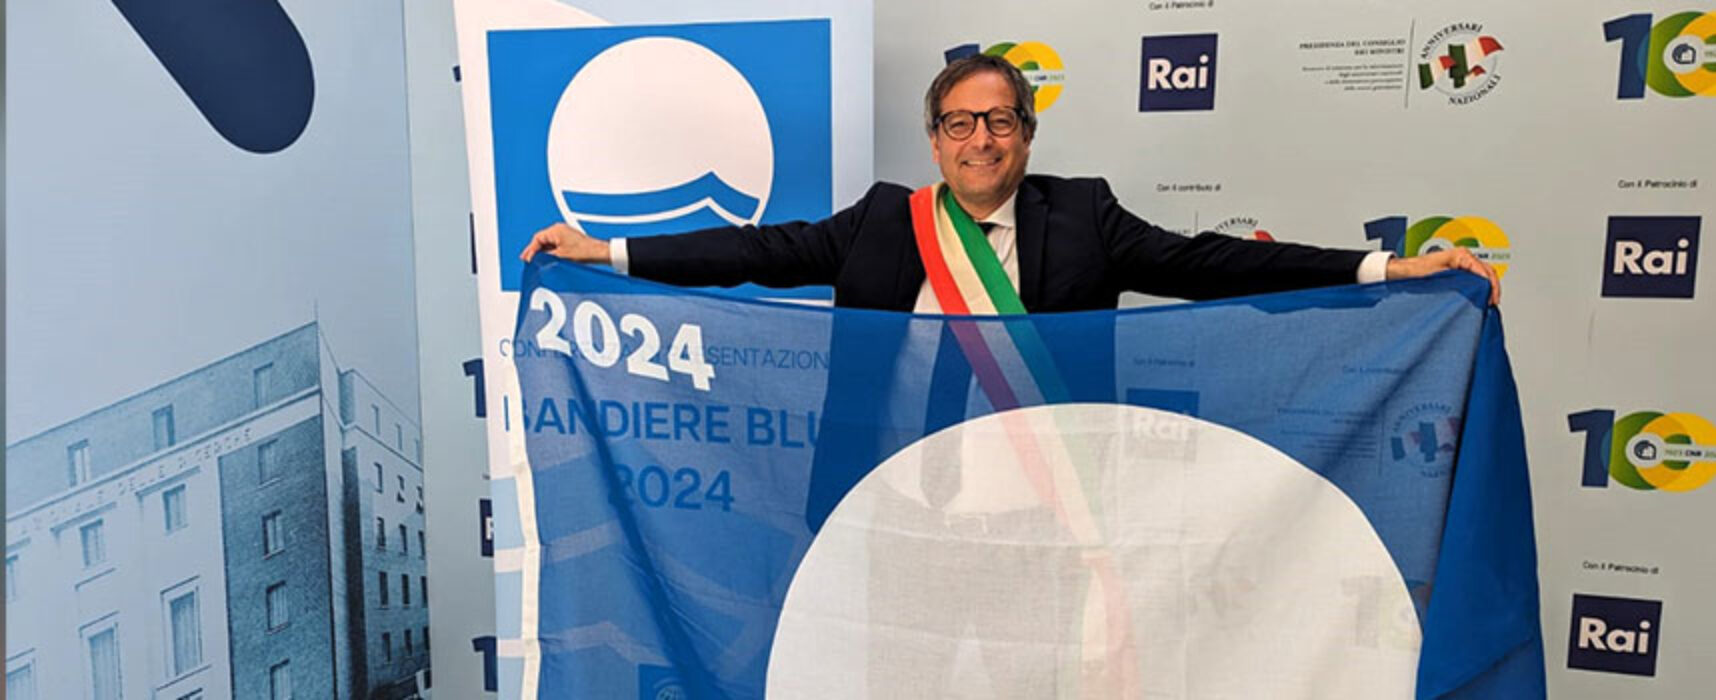 Bandiera Blu a Bisceglie, “Grandi benefici per turismo, economia e occupazione della nostra città”